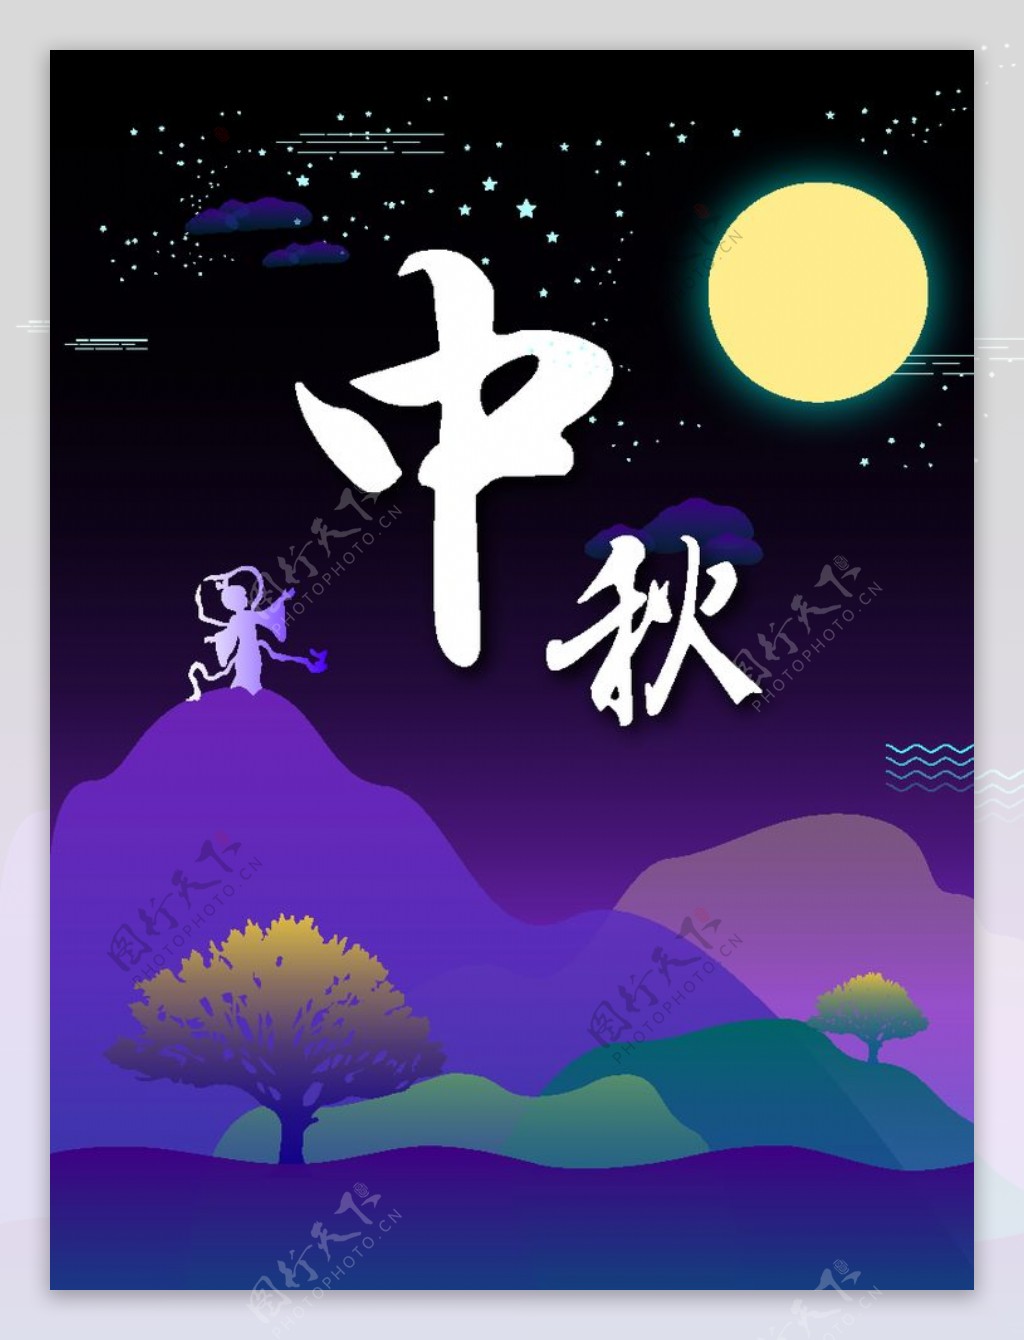 中秋节节日海报图片